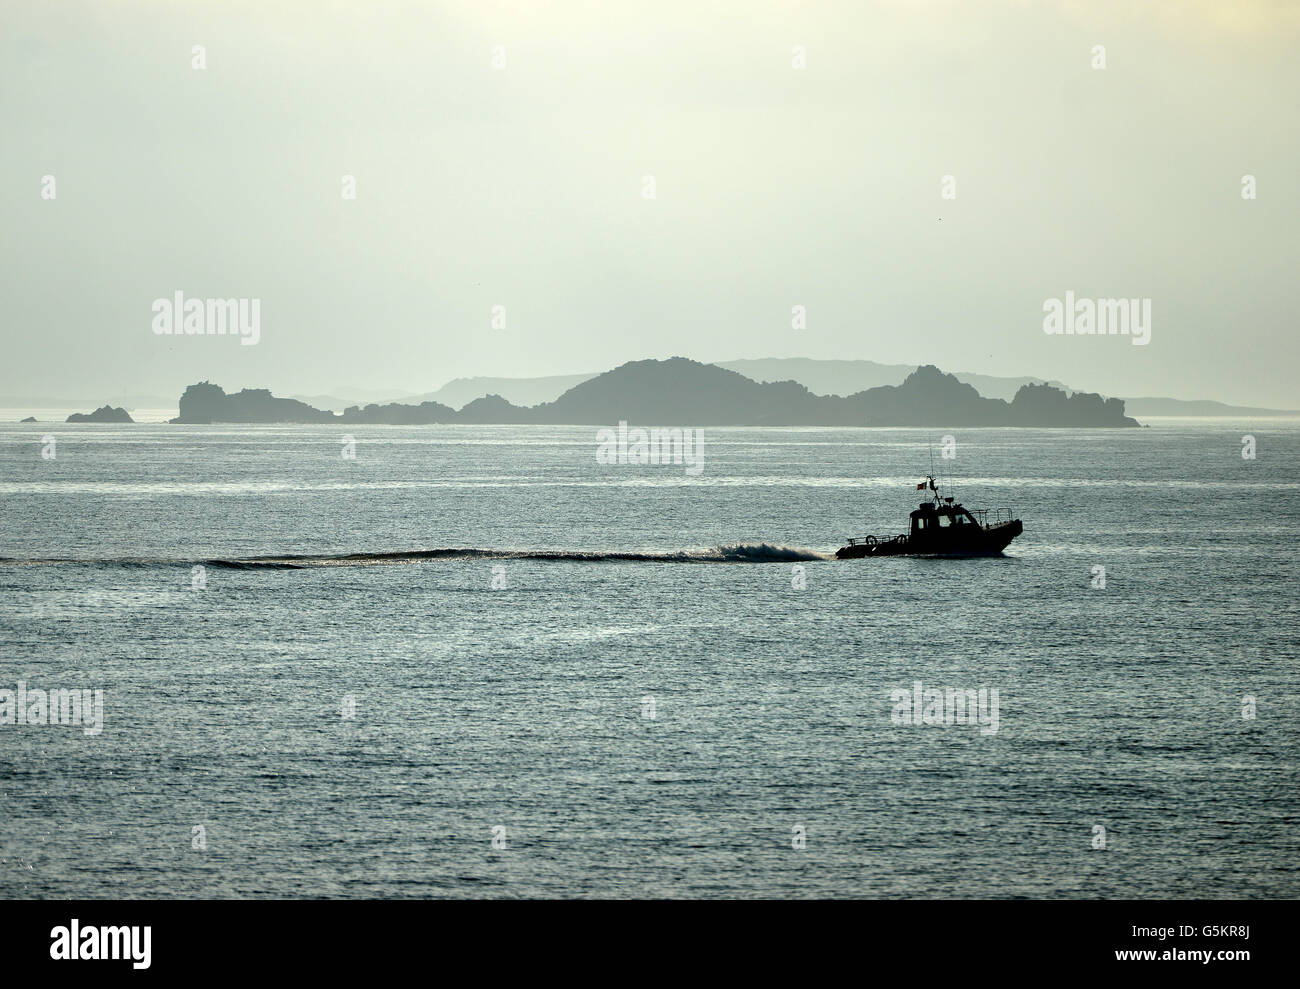 La mattina presto isolette rocciose nelle isole Scilly REGNO UNITO Foto Stock